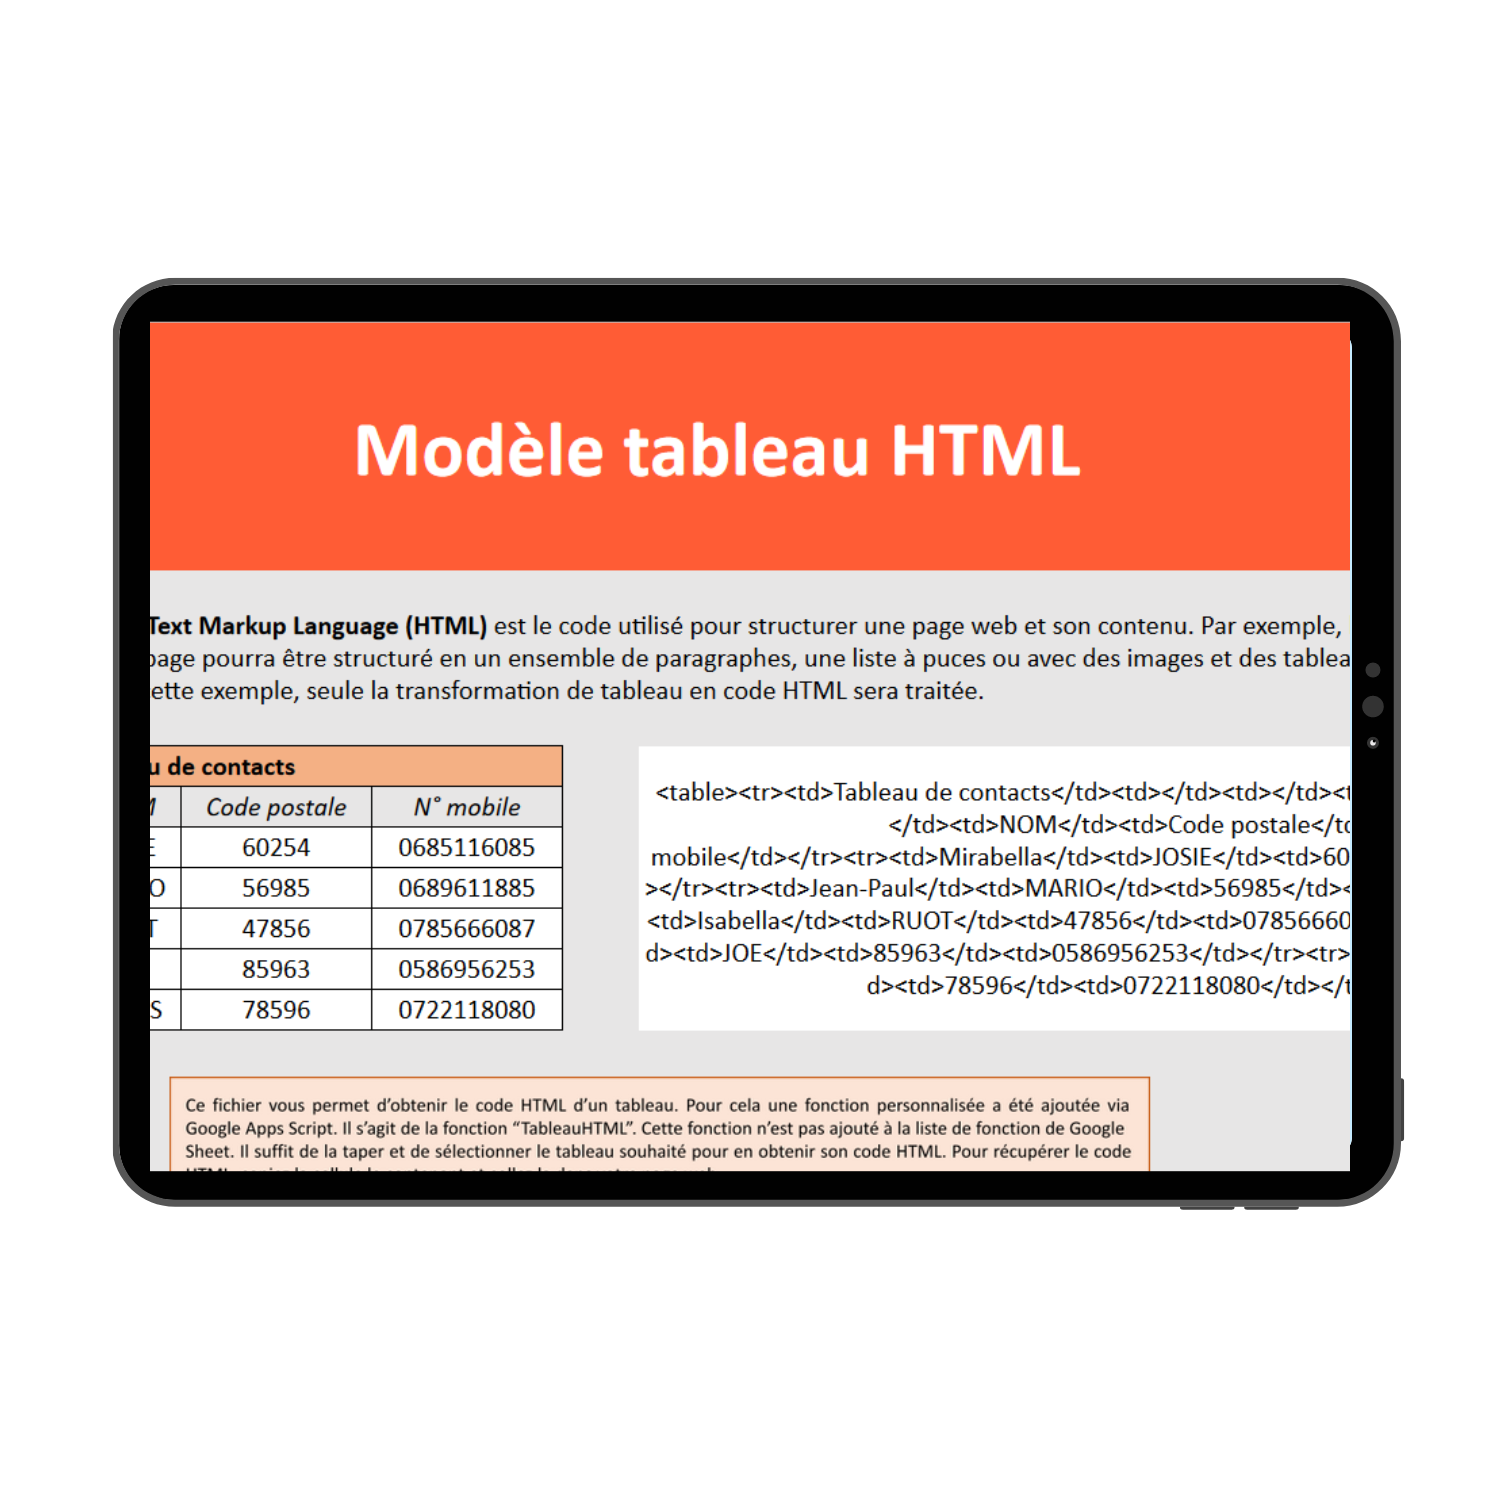 Modèle tableau HTML